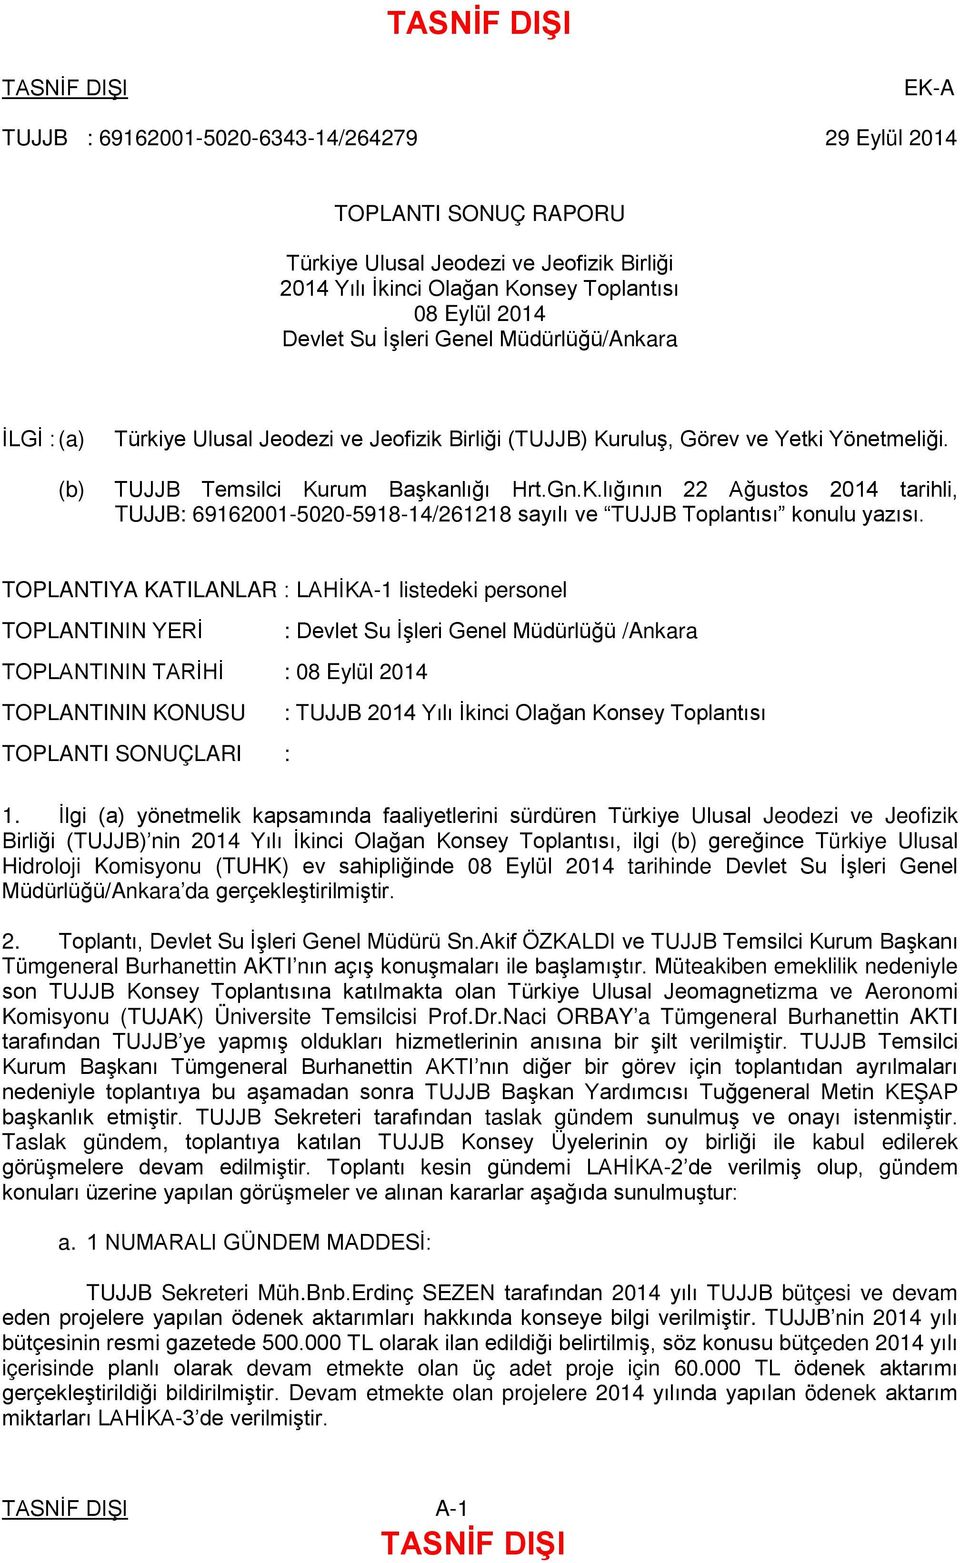 TOPLANTIYA KATILANLAR : LAHİKA-1 listedeki personel TOPLANTININ YERİ : Devlet Su İşleri Genel Müdürlüğü /Ankara TOPLANTININ TARİHİ : 08 Eylül 2014 TOPLANTININ KONUSU : TUJJB 2014 Yılı İkinci Olağan